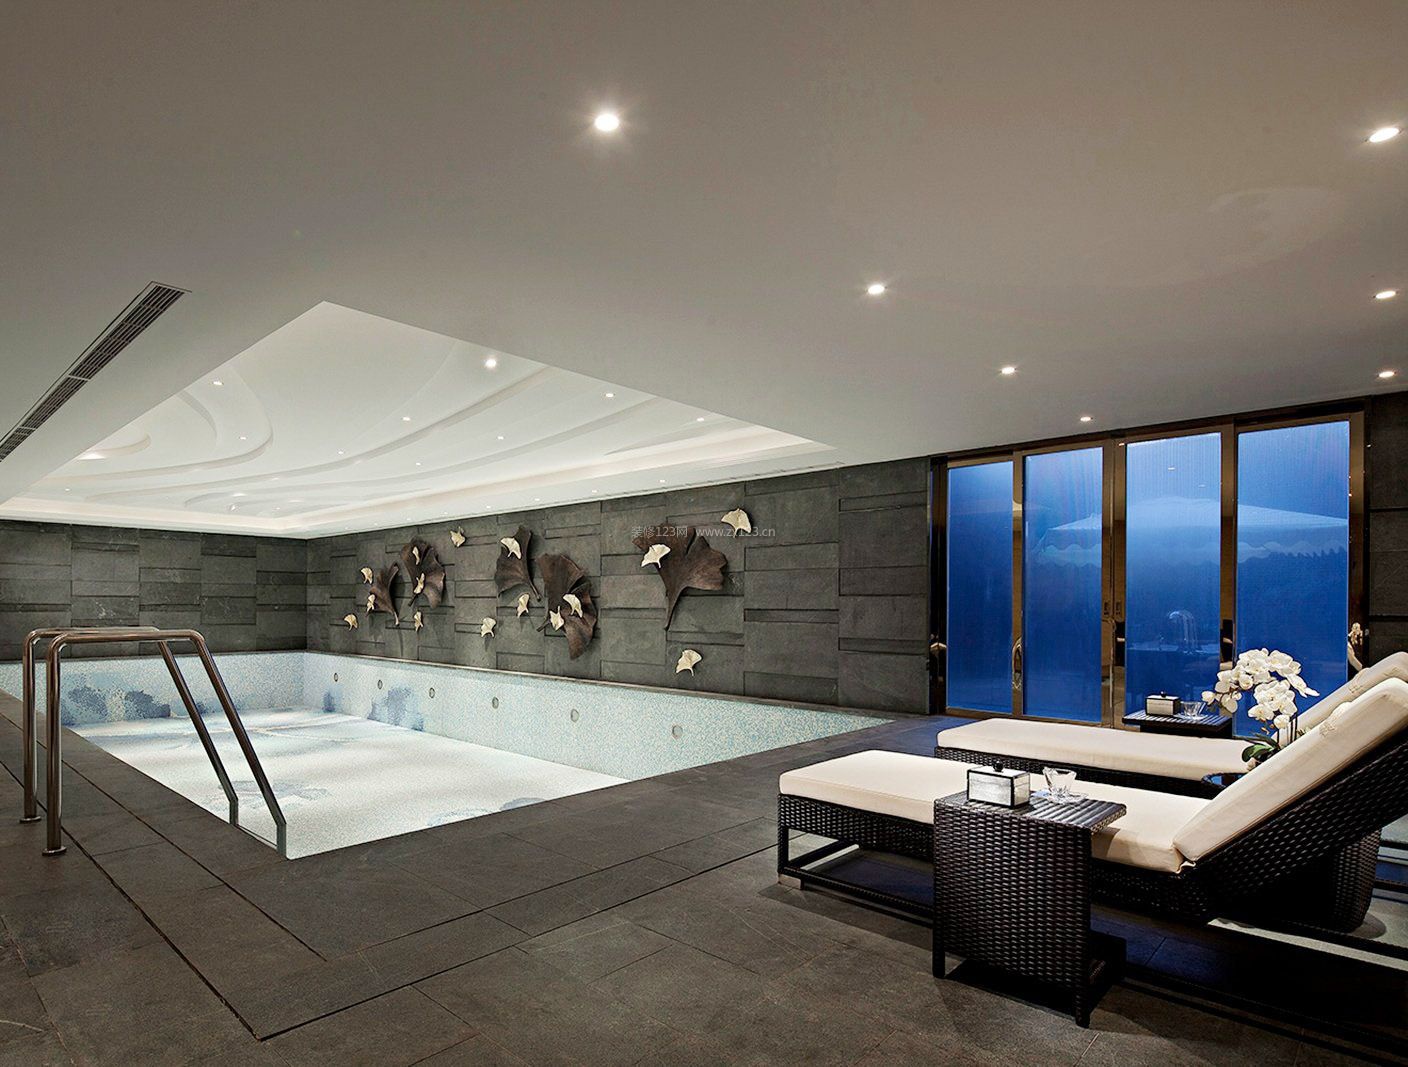 300平米房子室内泳池装潢设计